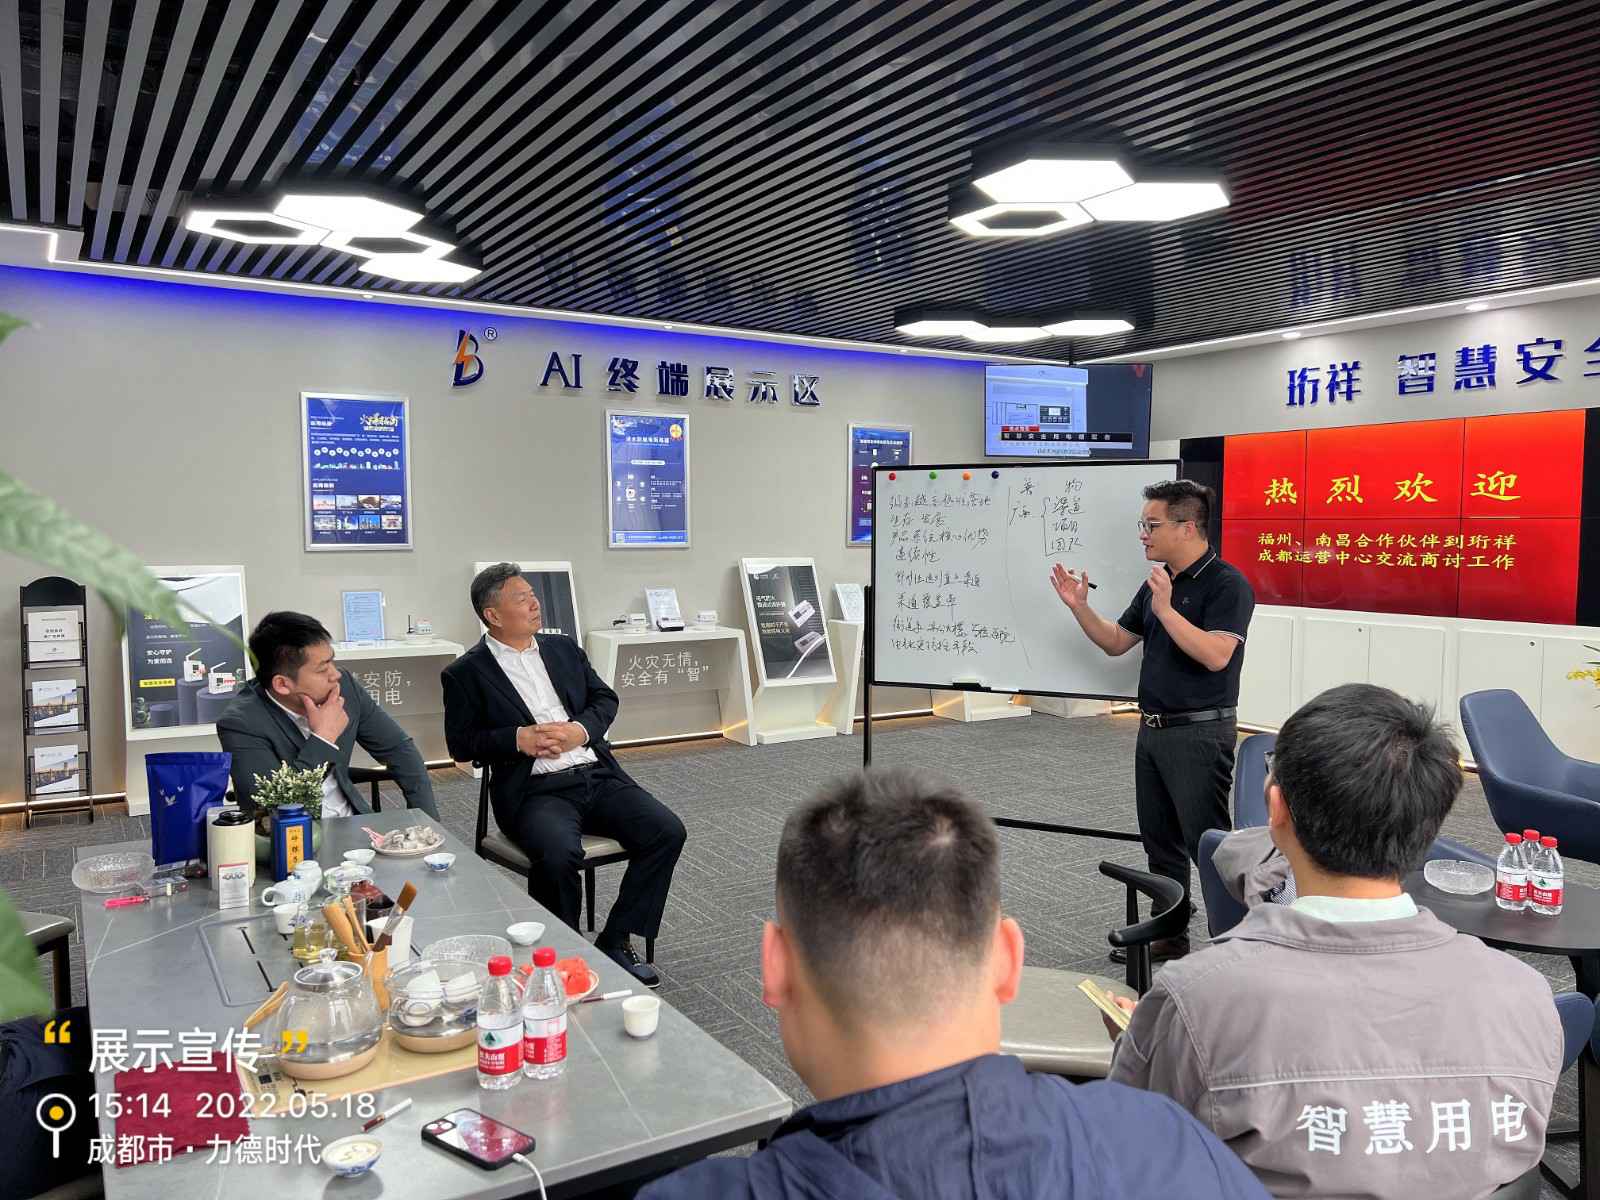 新半岛官网(上海)控股有限公司为中移铁通有限公司进行安全用电培训